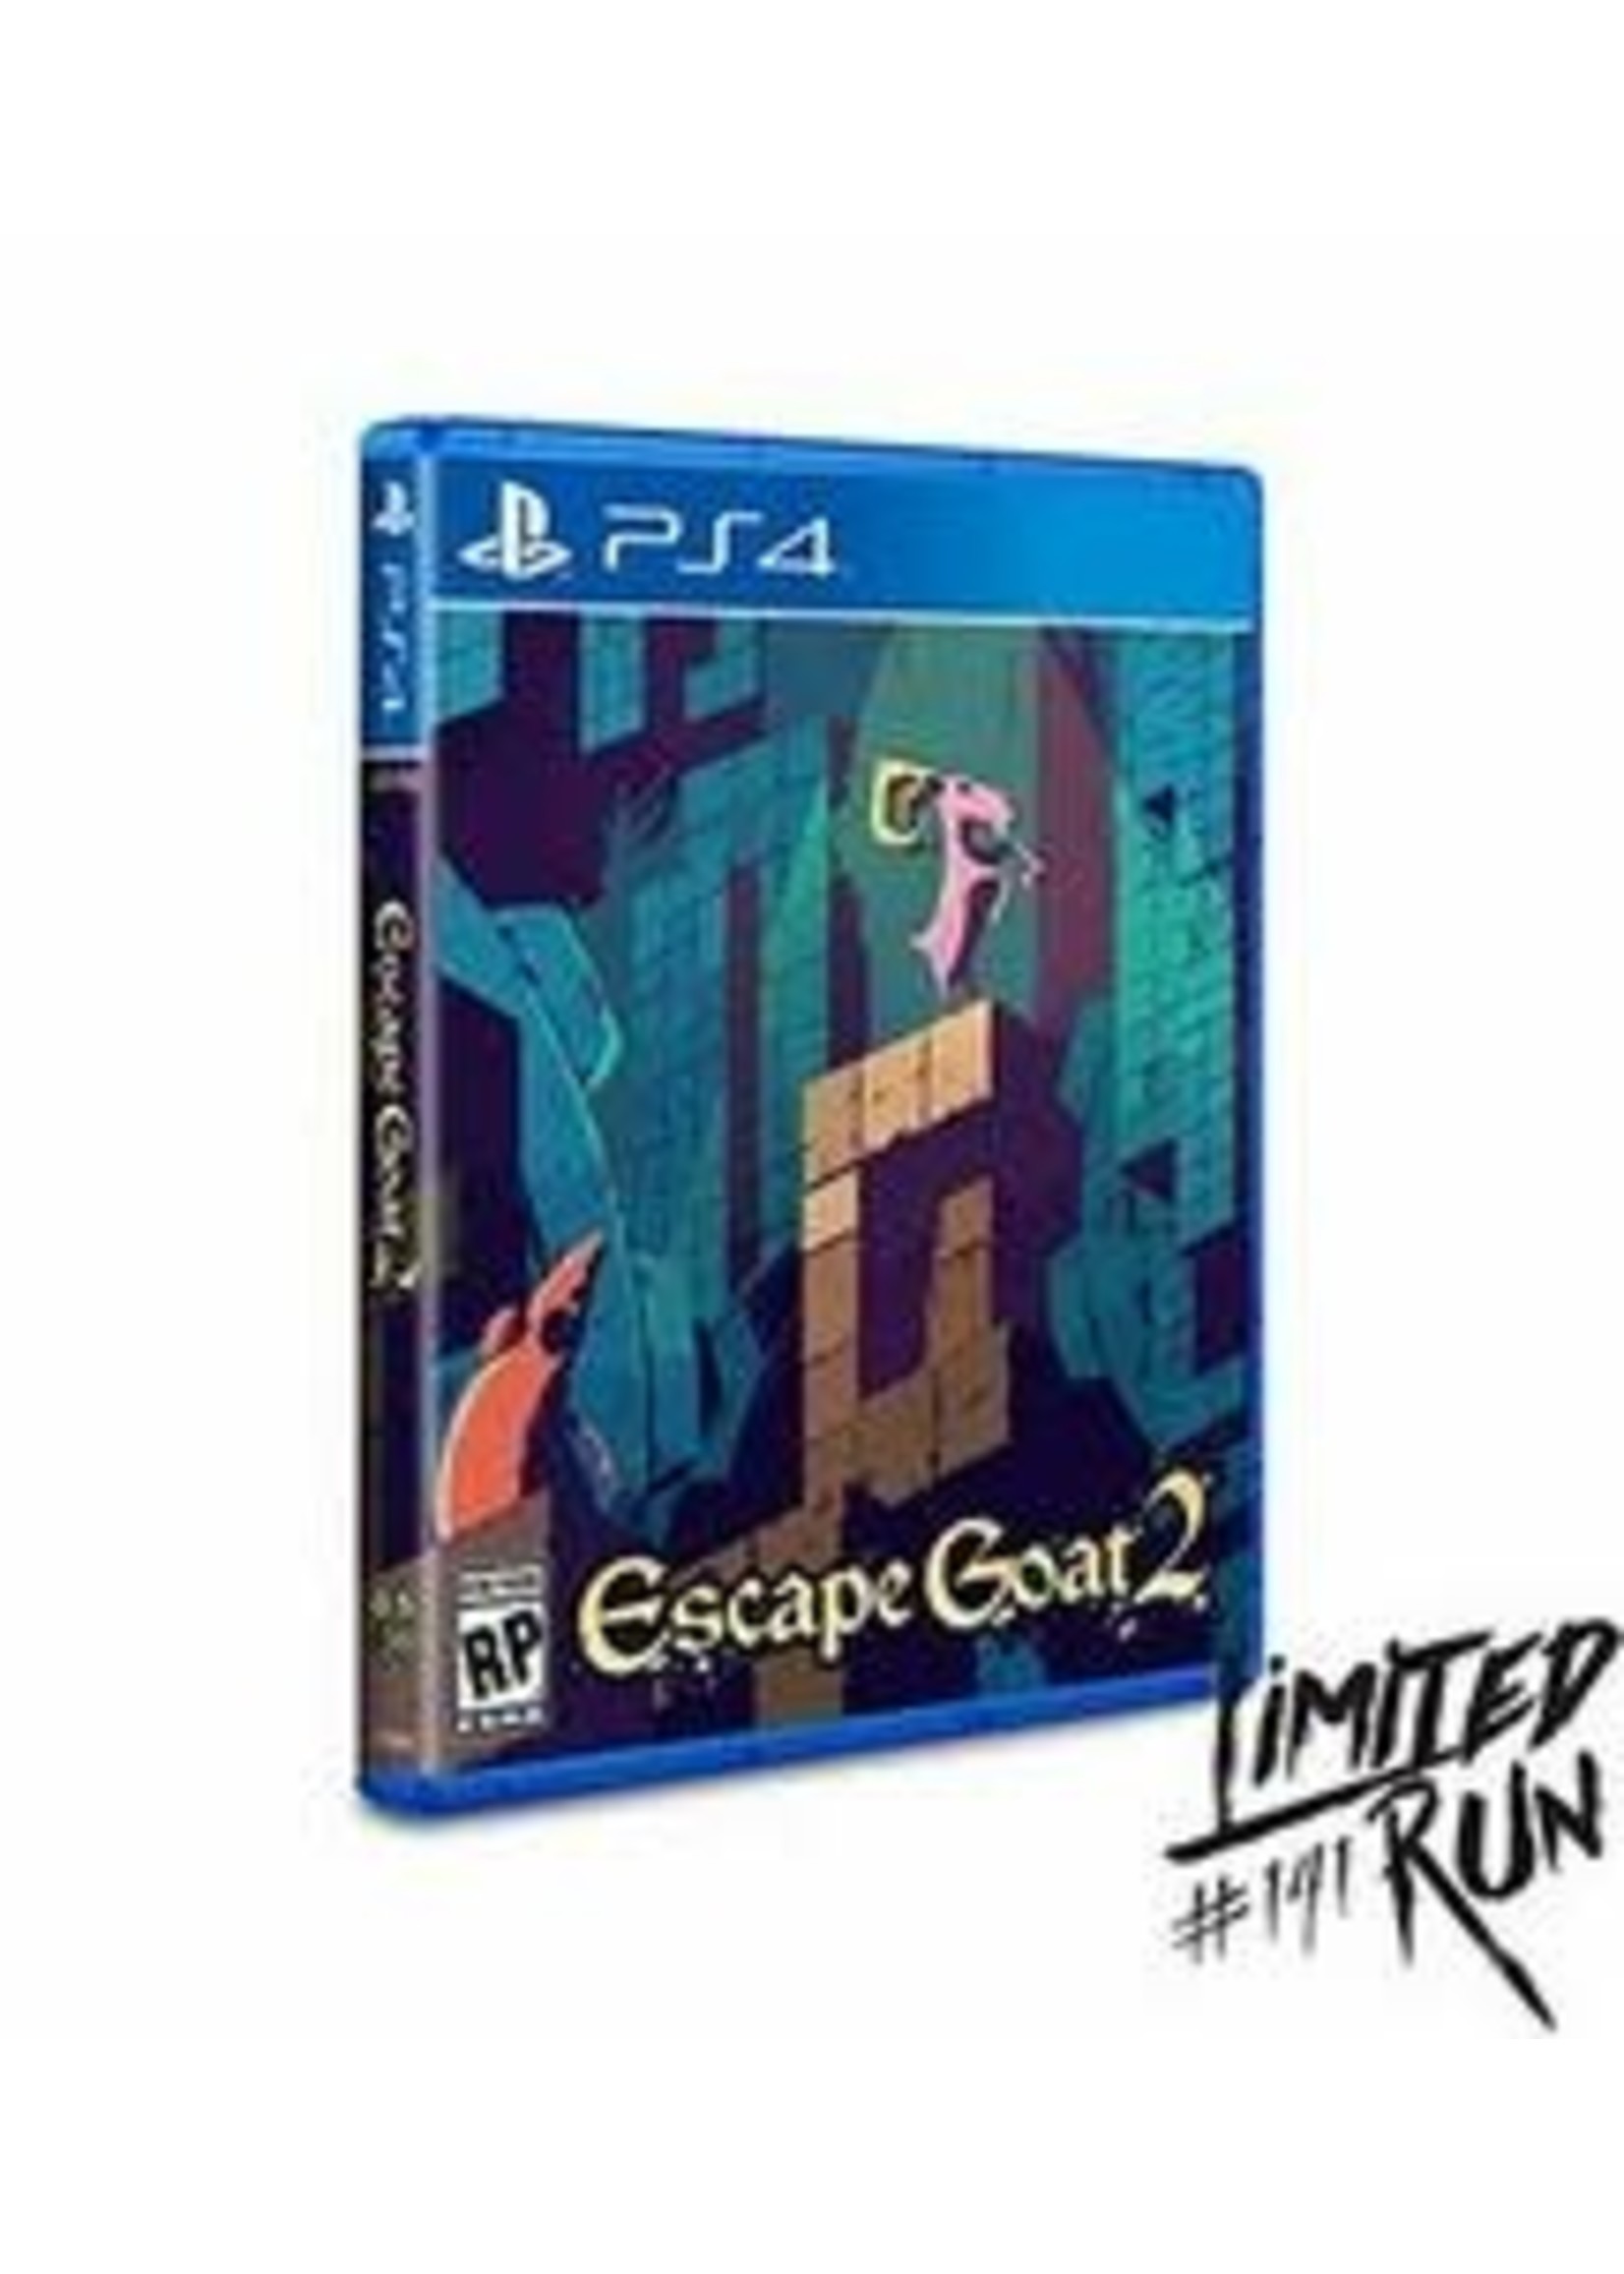 Escape Goat 2 PS4 (USAGÉ)